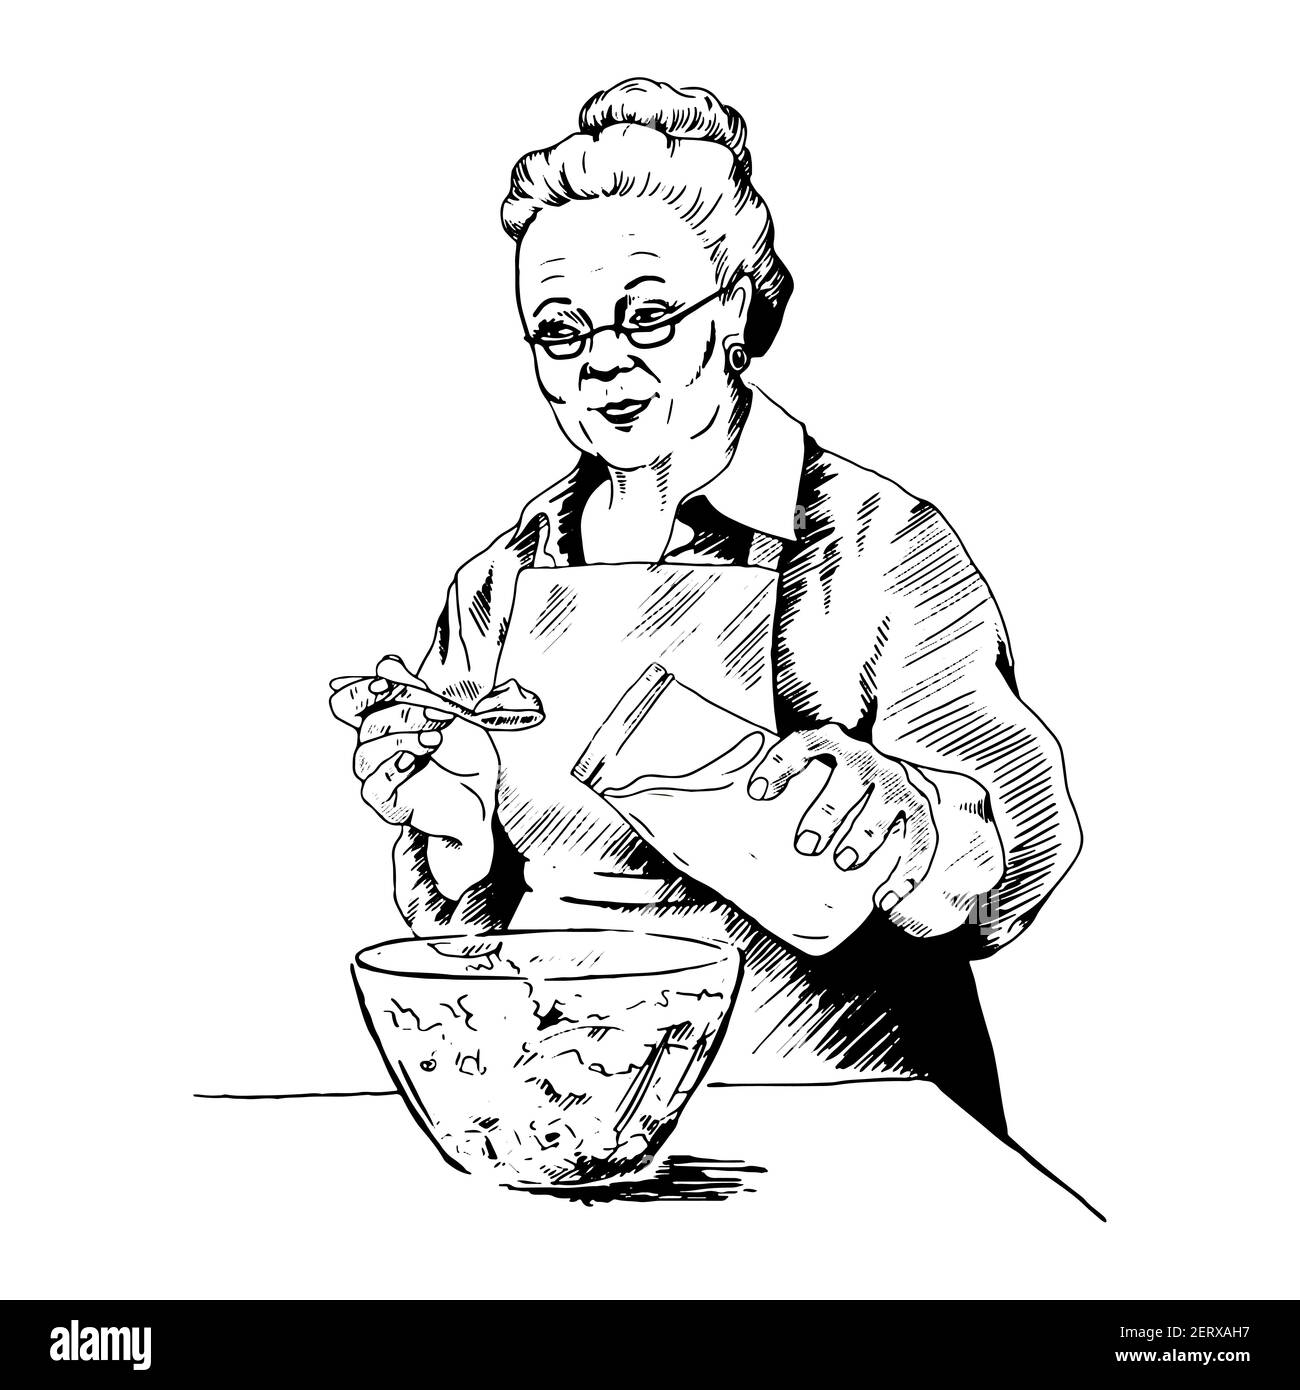 Grand-mère prépare une salade, un déjeuner, met de la mayonnaise à partir d'une illustration CAN.Vector, croquis, dessin au trait, nouilles Illustration de Vecteur